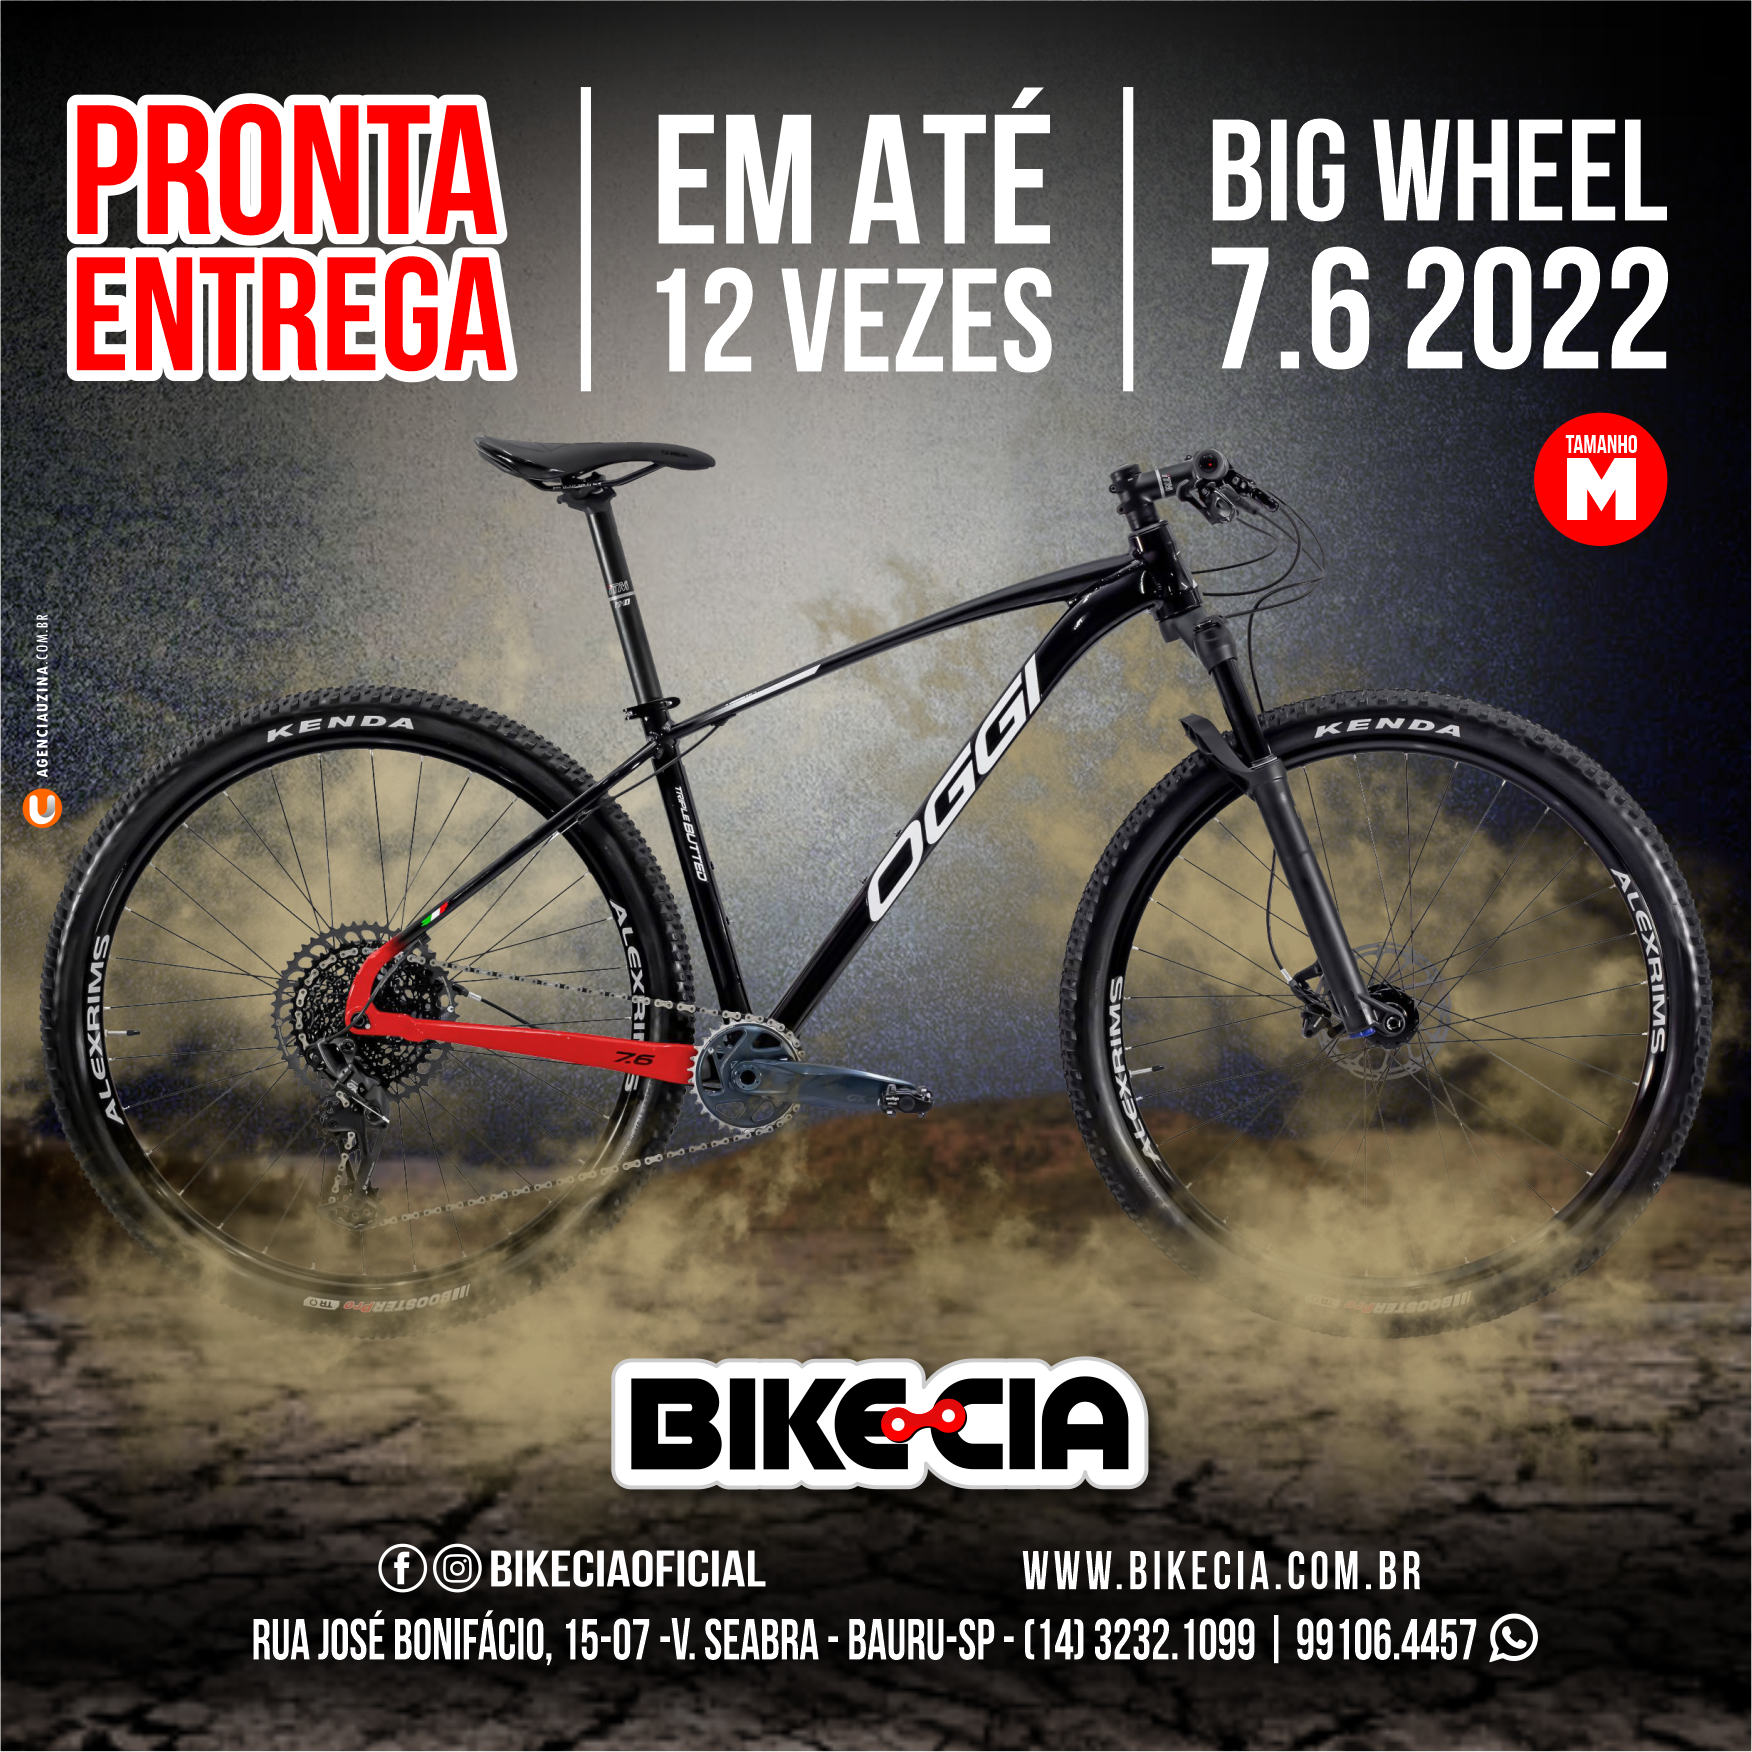 bikes_pronta entrega_bikecia_2022